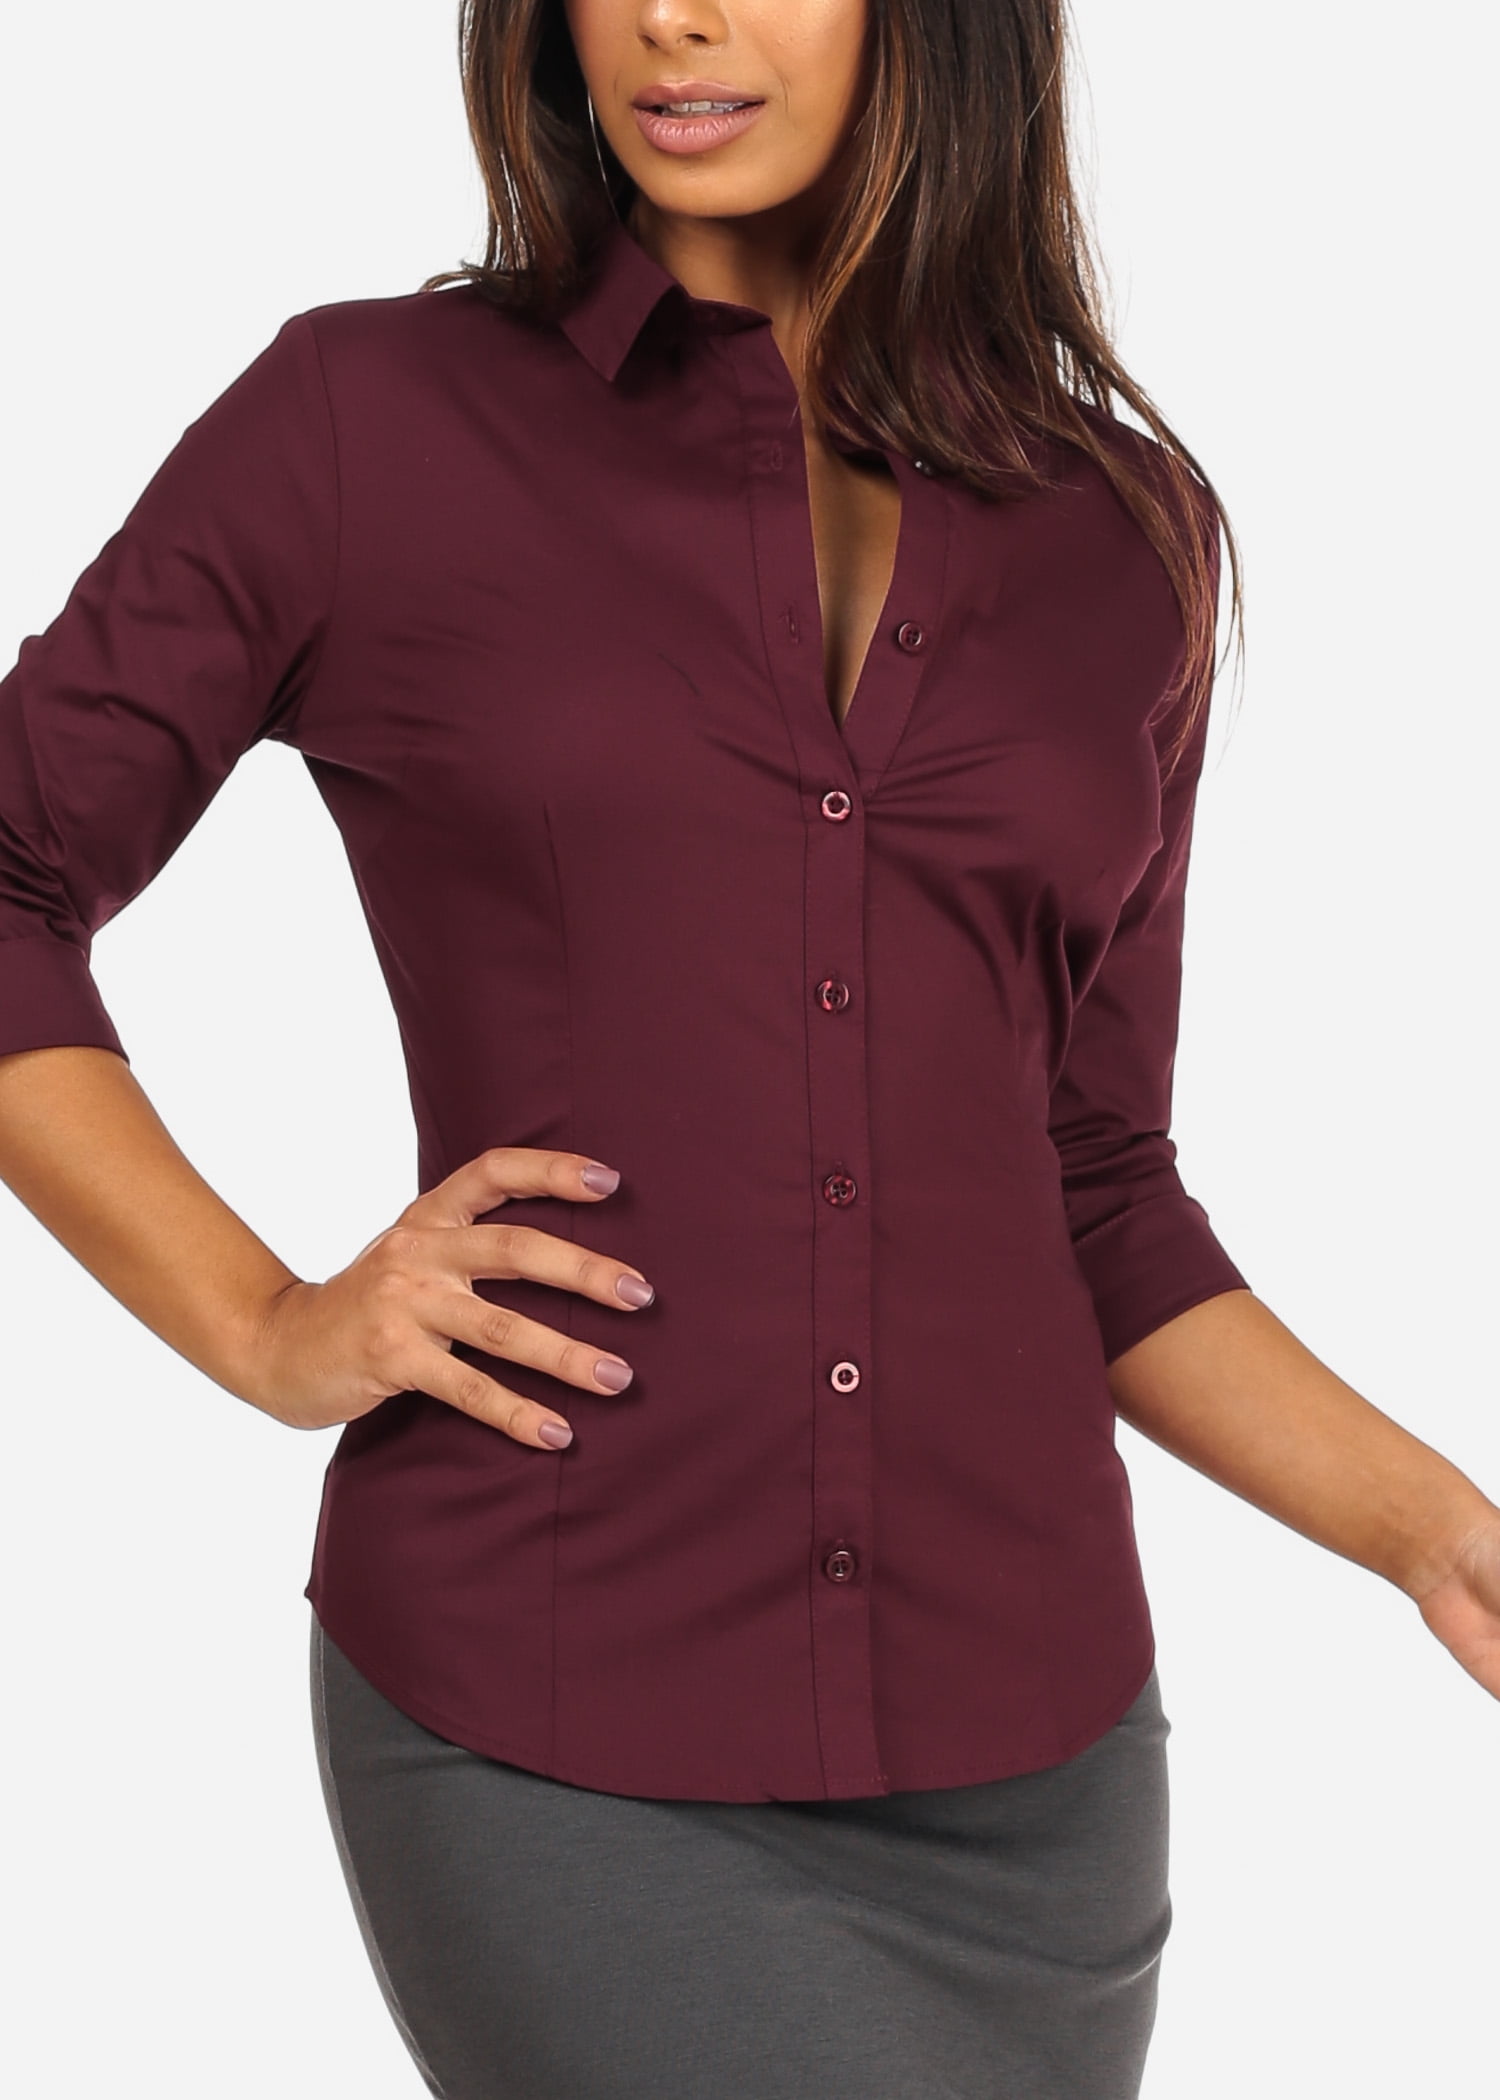 burgundy button up shirt womens